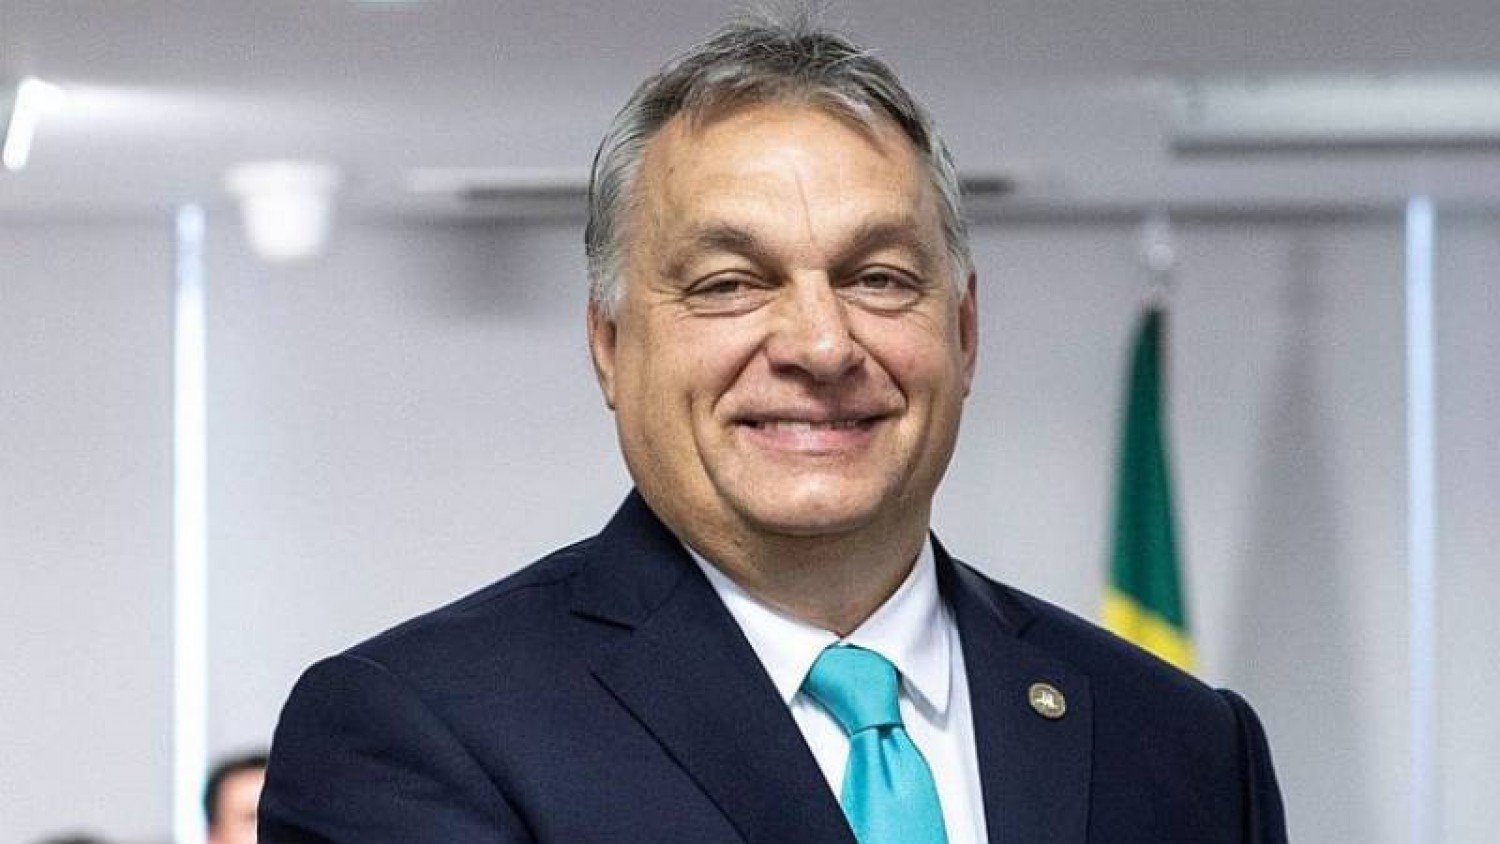 Megszületett Orbán Viktor negyedik unokája